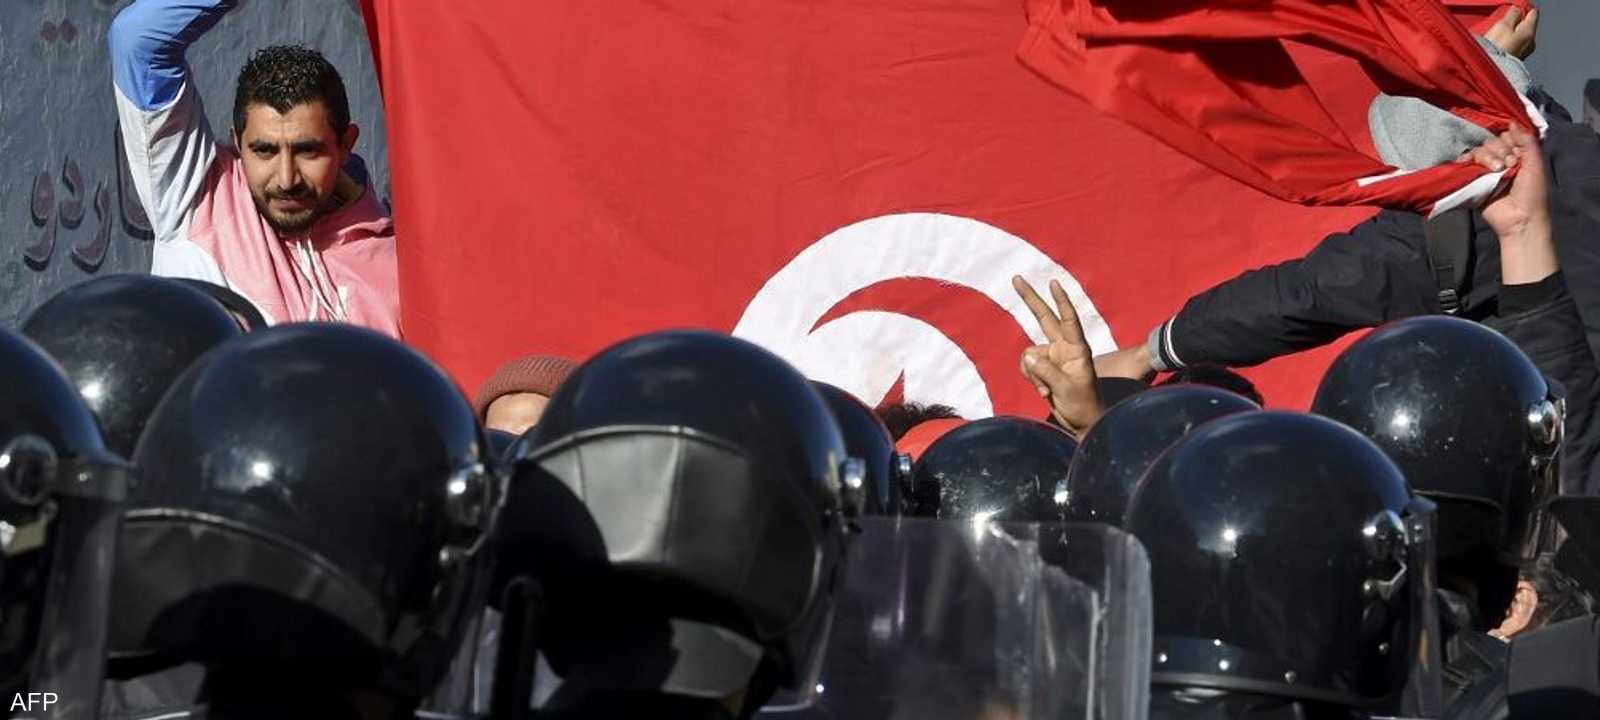 أوضاع اقتصادية كارثية في تونس